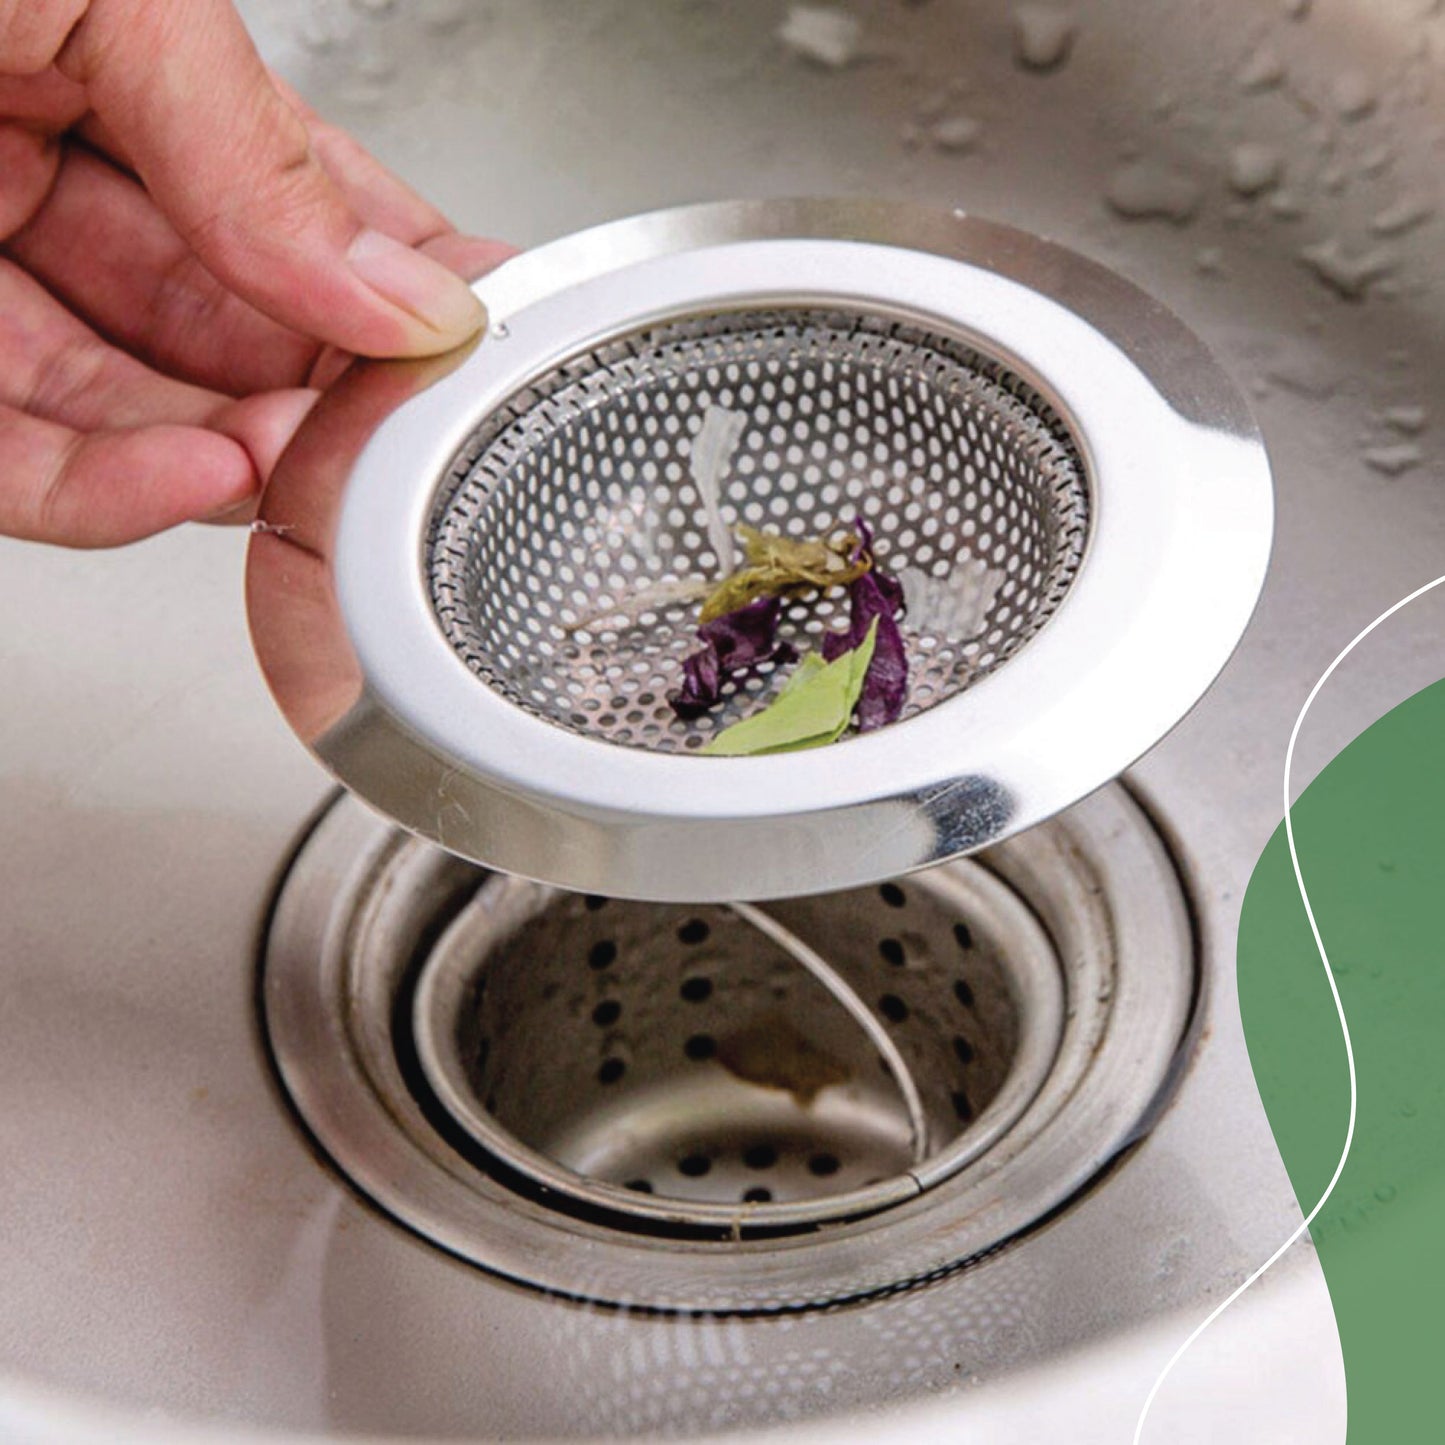 Tratamiento contra malos olores en tuberías coladeras drenajes de baño y cocina - ODOUR STOP LISTO PARA USAR - 100% Ecológico.